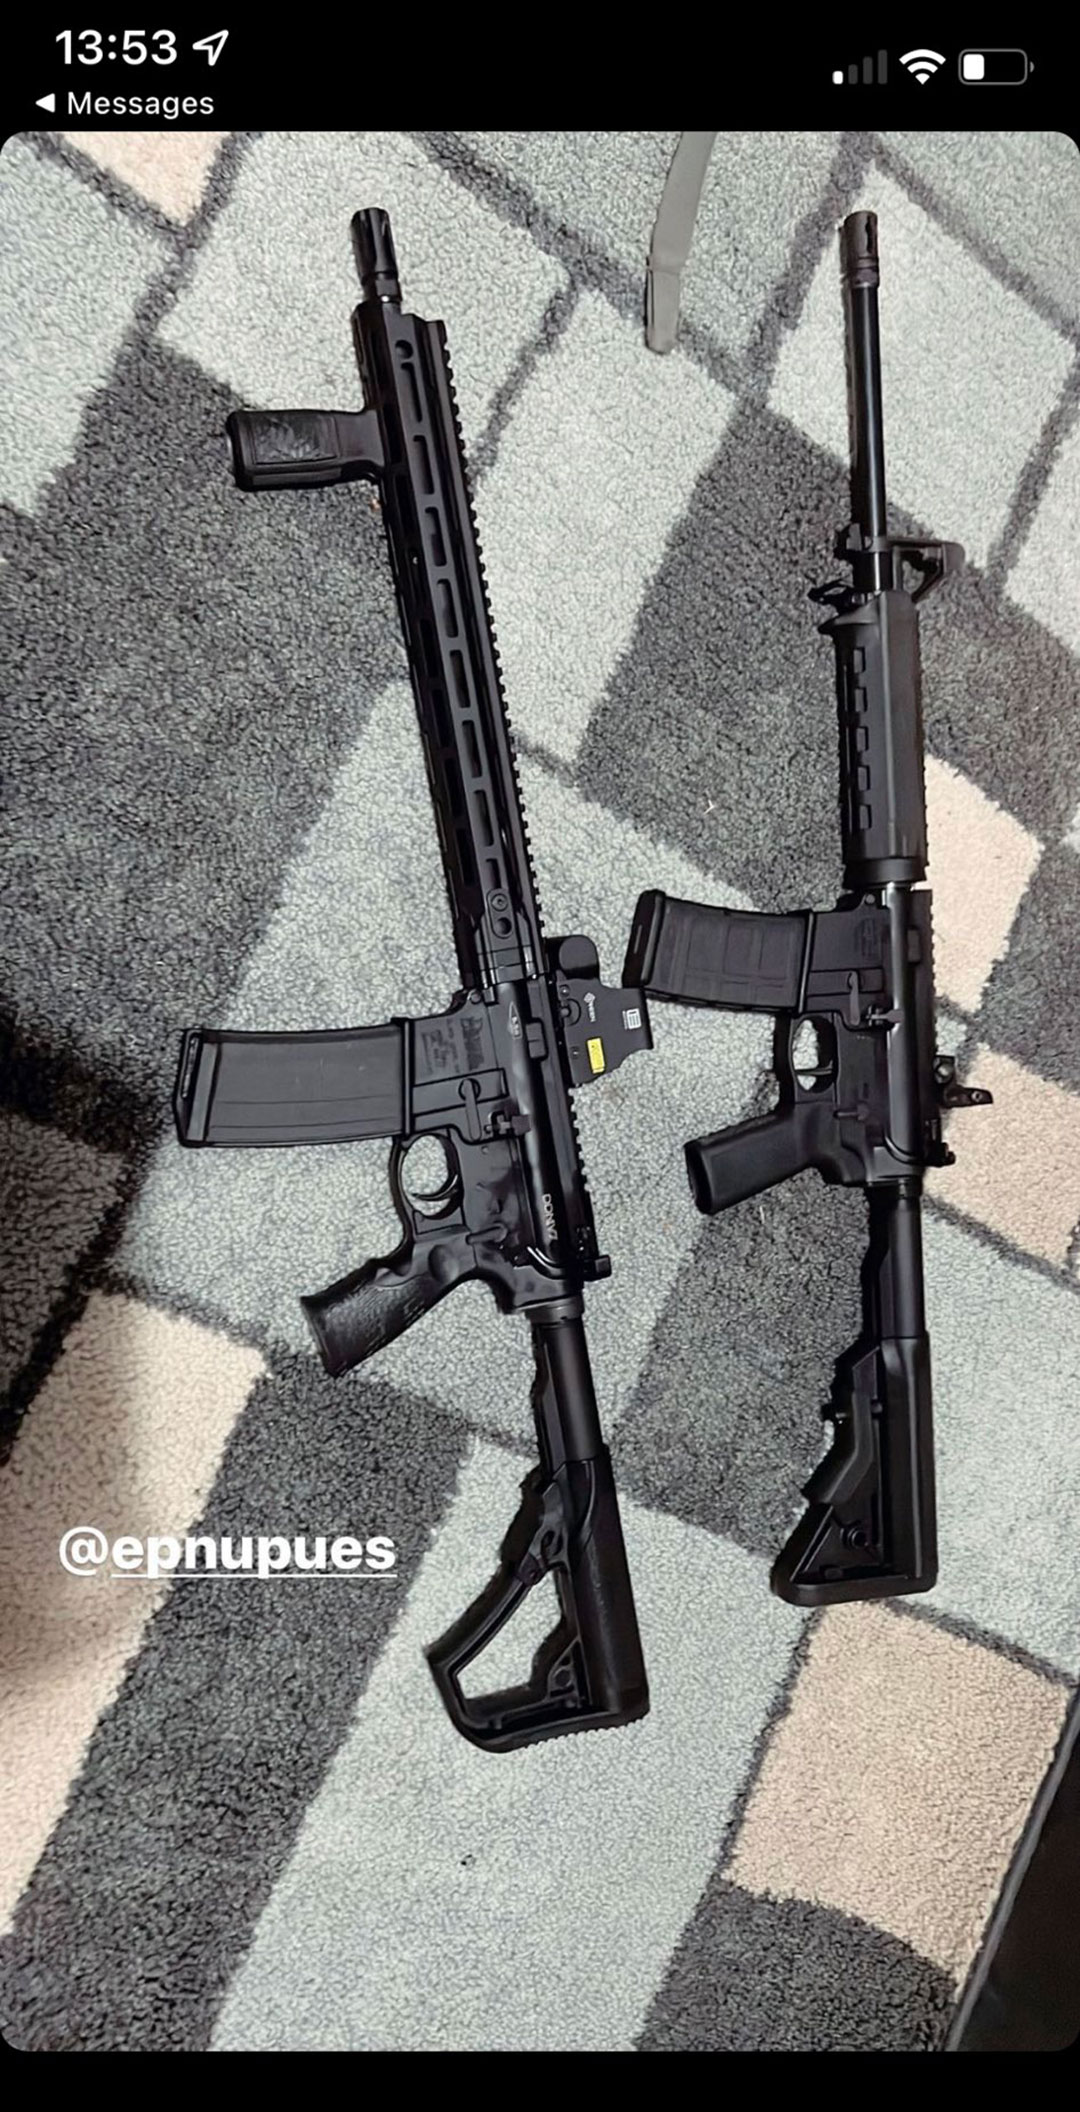 Las armas que utilizó Salvador Ramos